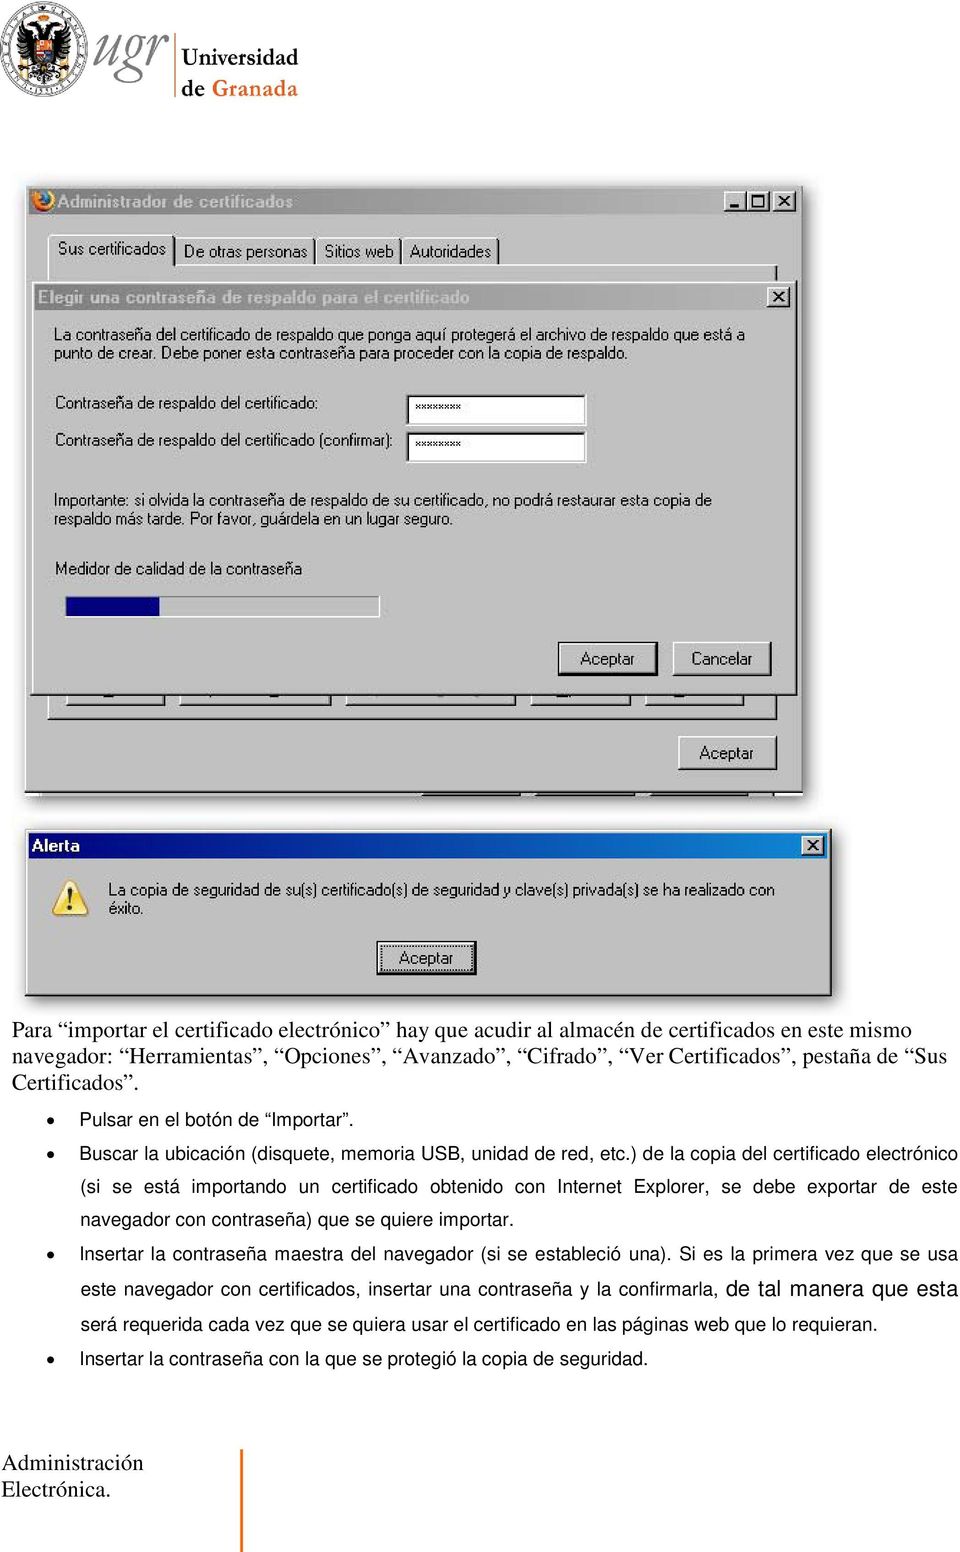 ) de la copia del certificado electrónico (si se está importando un certificado obtenido con Internet Explorer, se debe exportar de este navegador con contraseña) que se quiere importar.